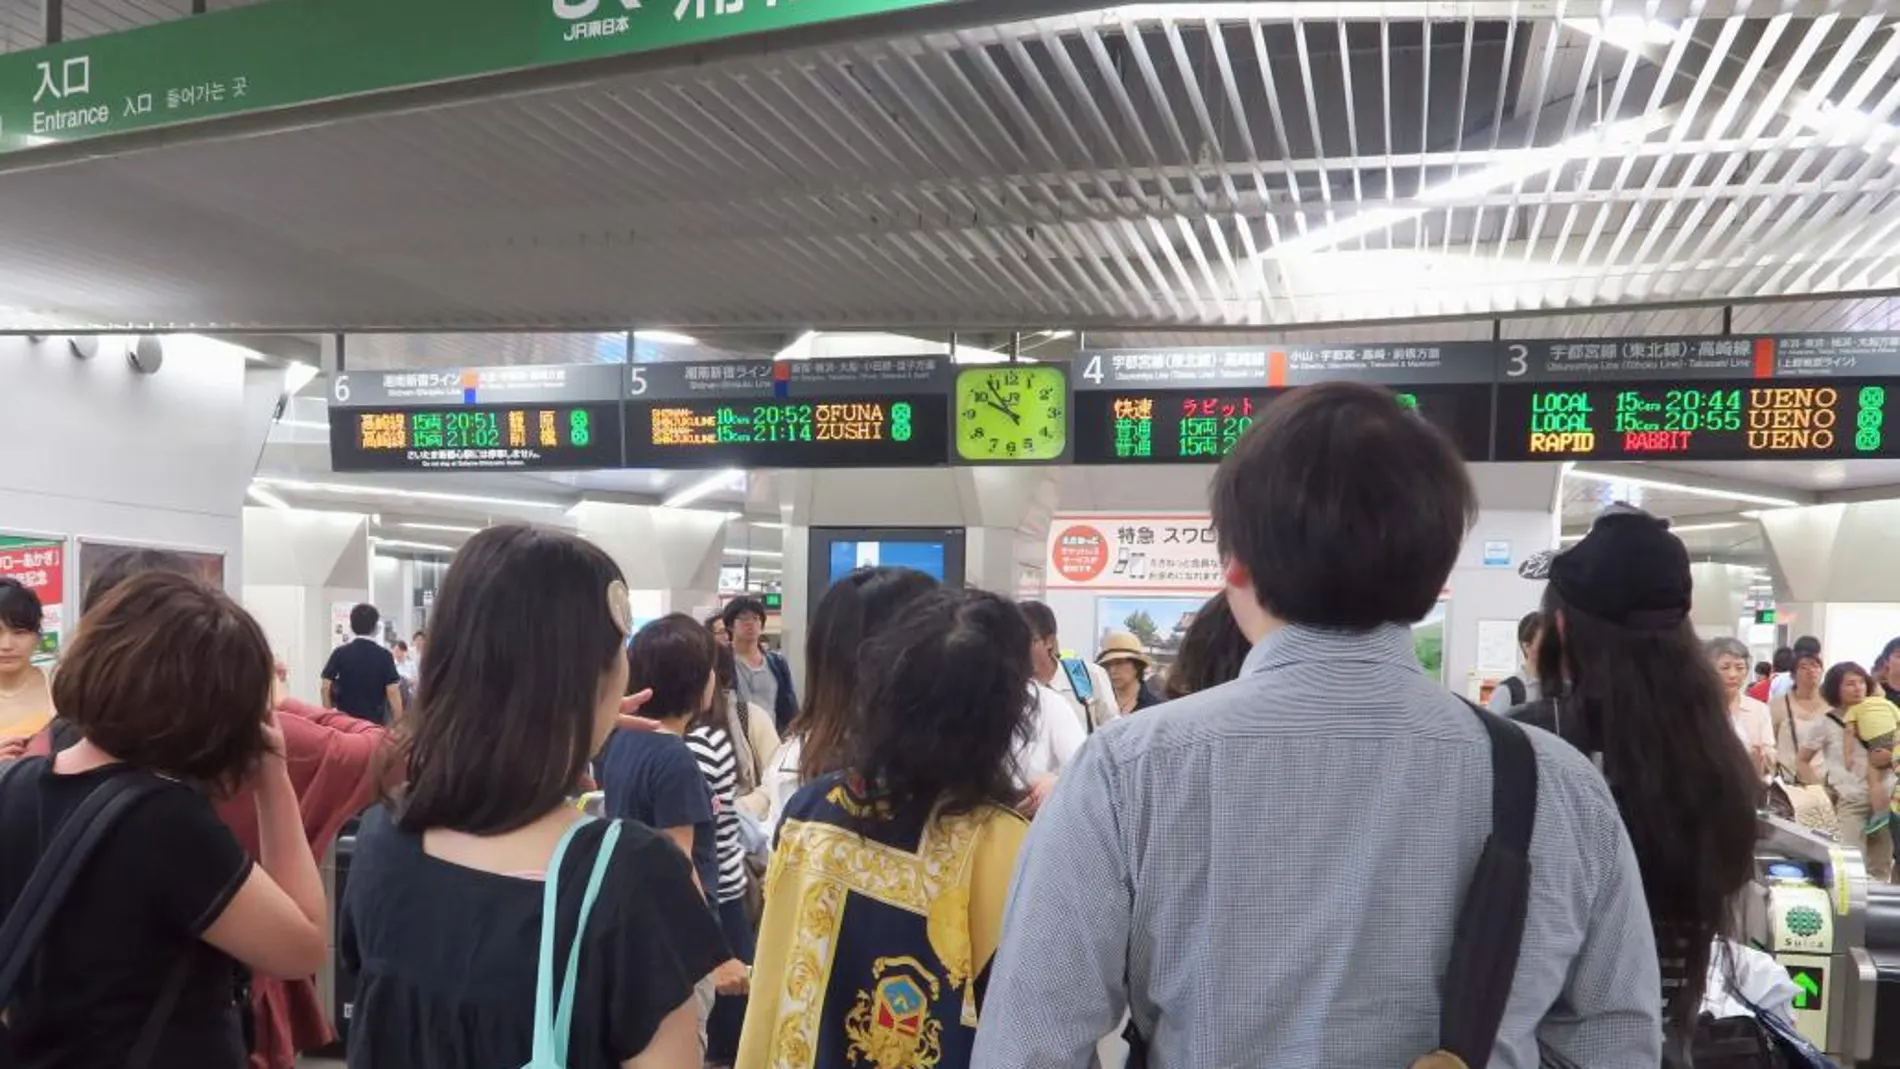 Viajeros miran el panel de horarios ferroviarios tras la alarma de terremoto que ha sacudido hoy Japón.